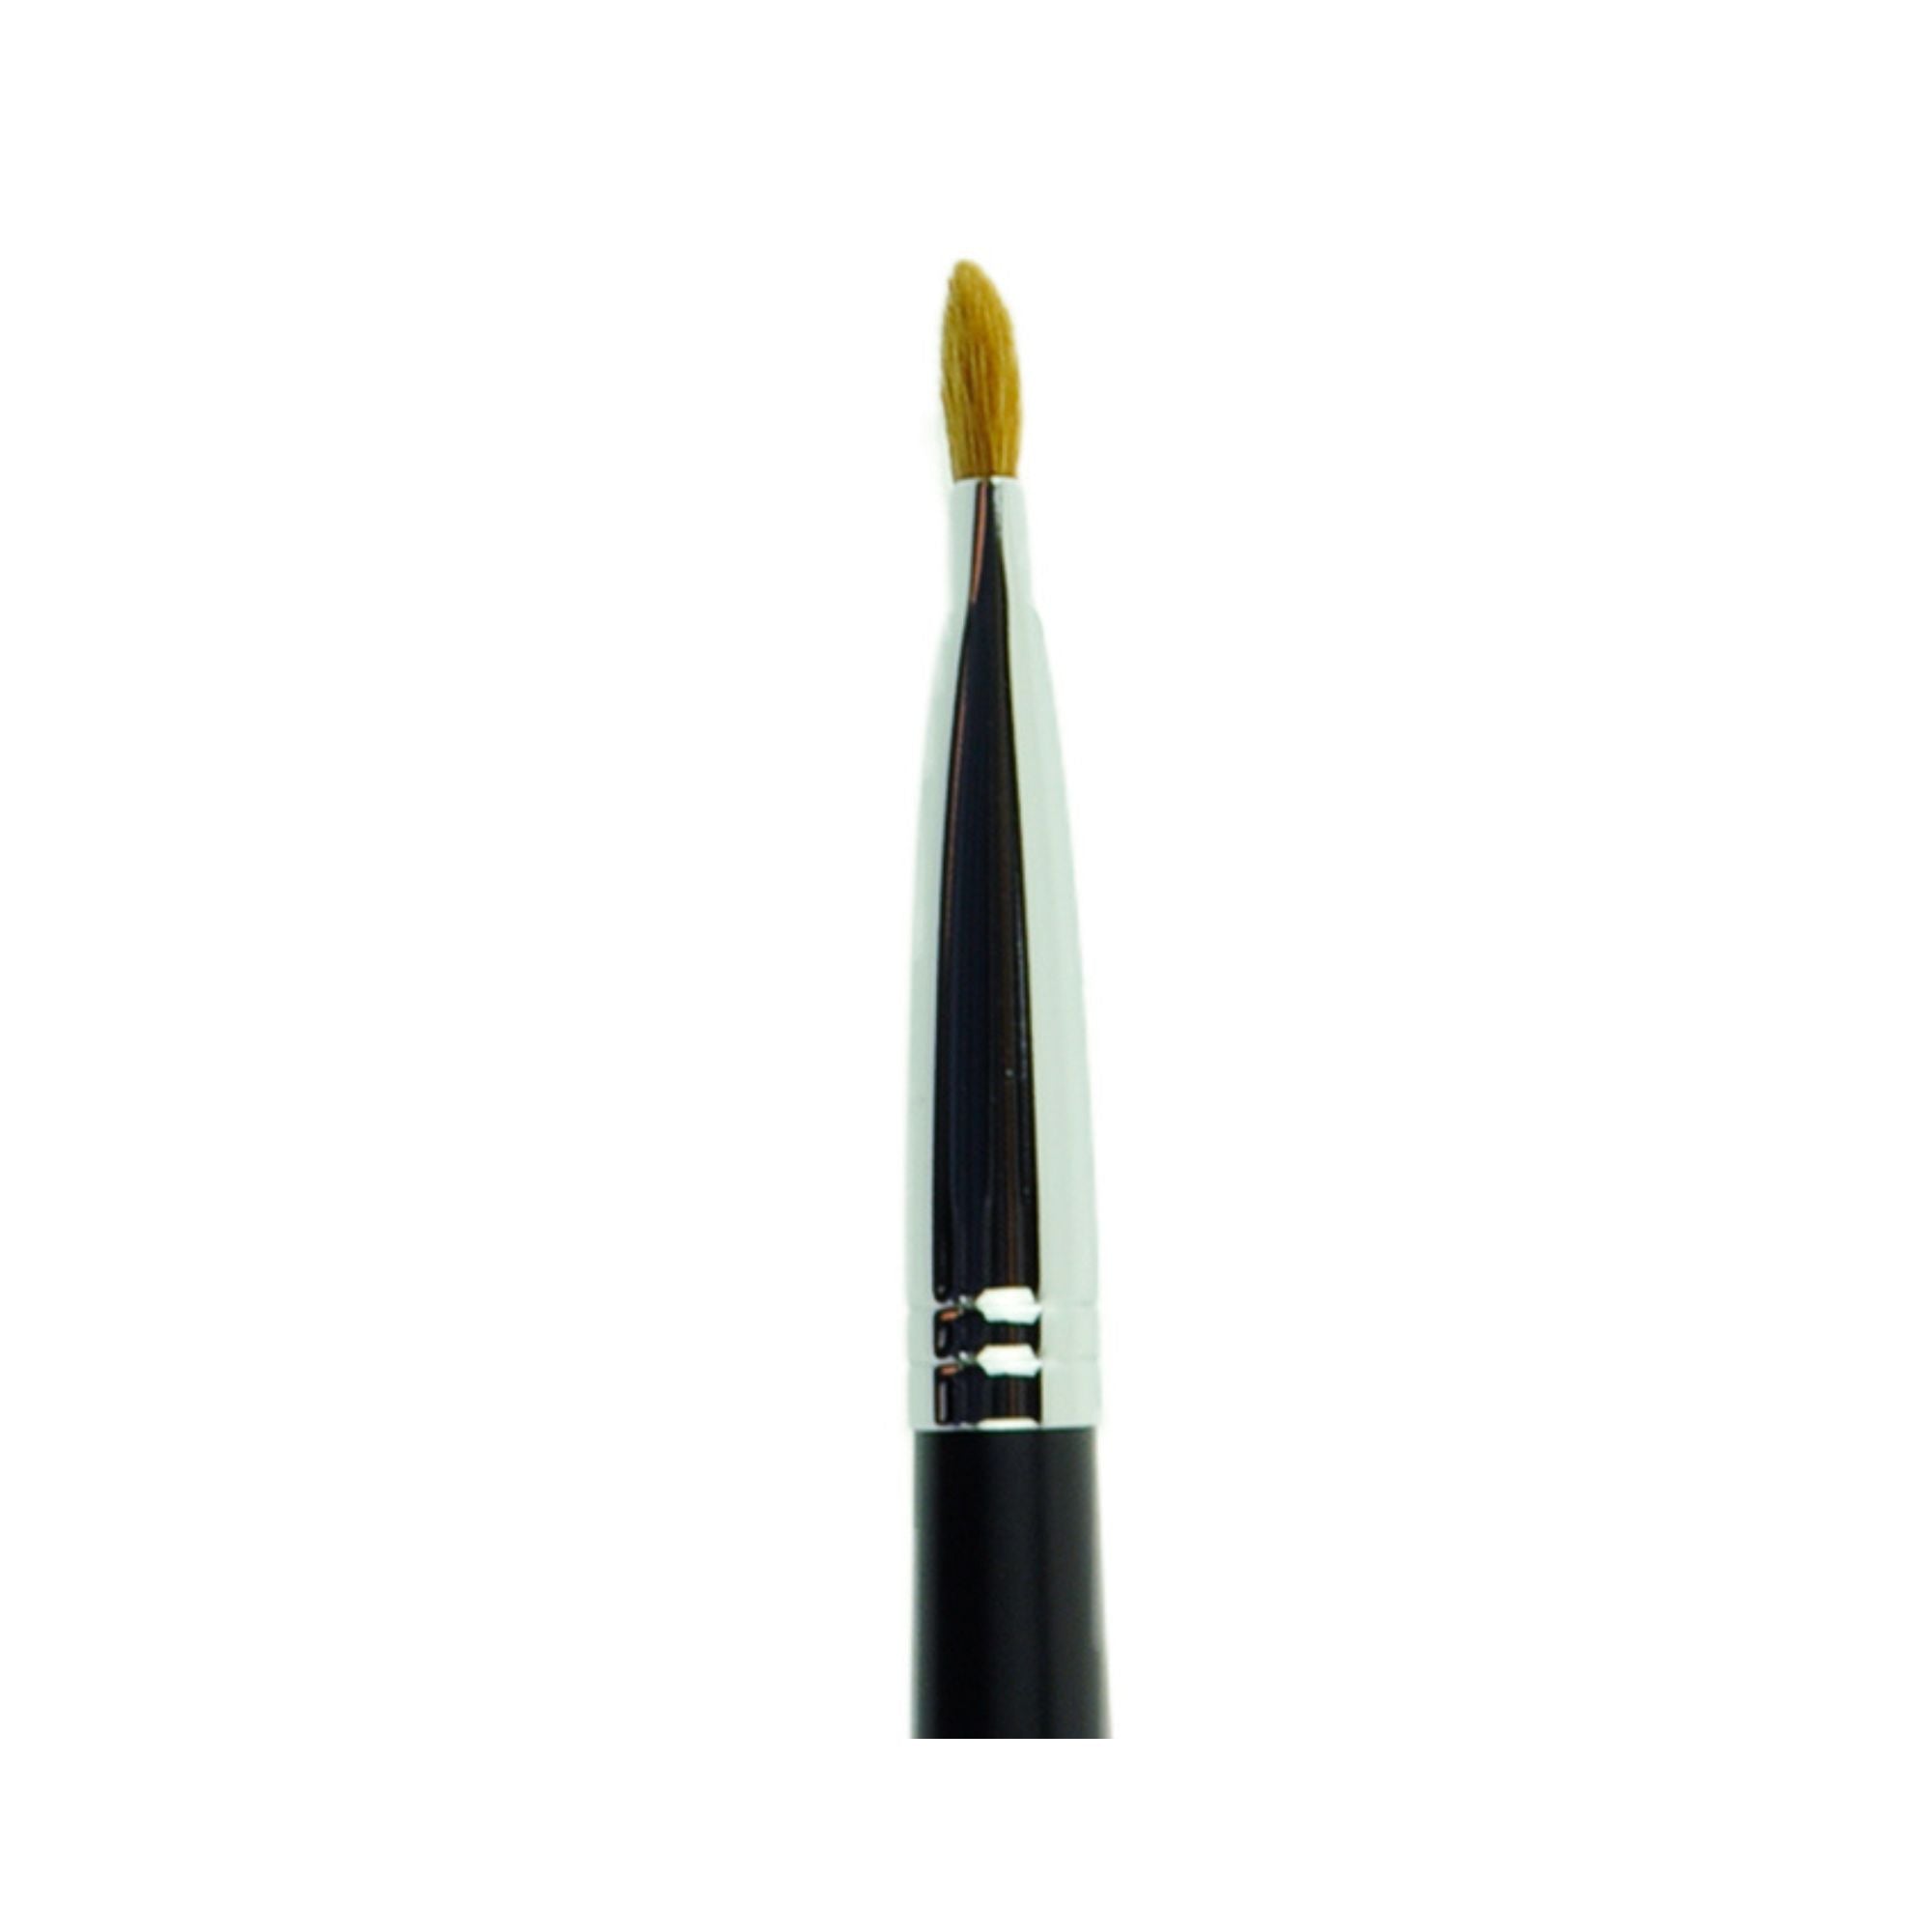 Tanseido Eyeshadow Brush YWQ9T - Fude Beauty, Japanese Makeup Brushes